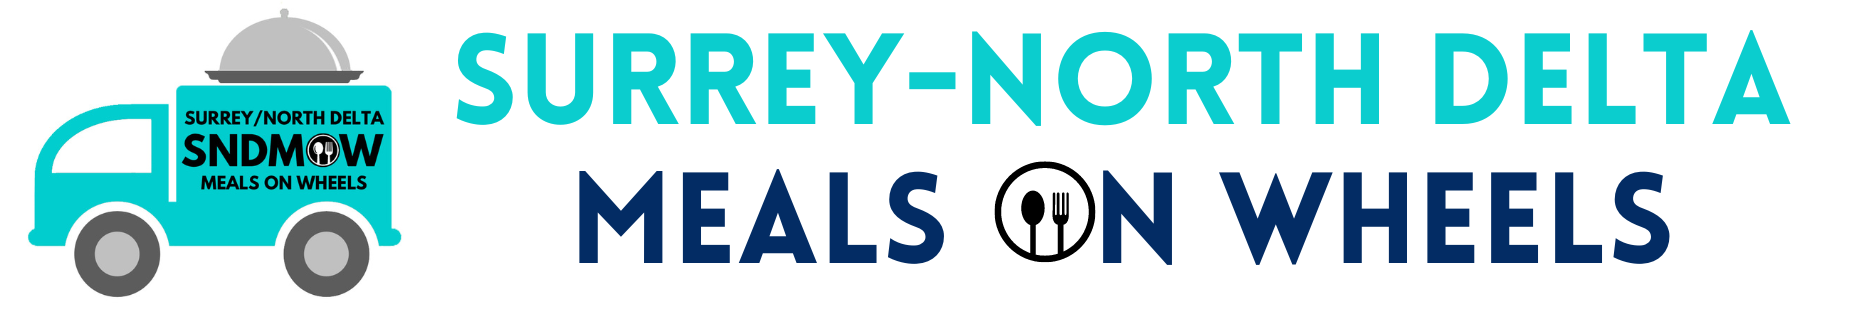 Surrey-North Delta Meals on Wheels logo